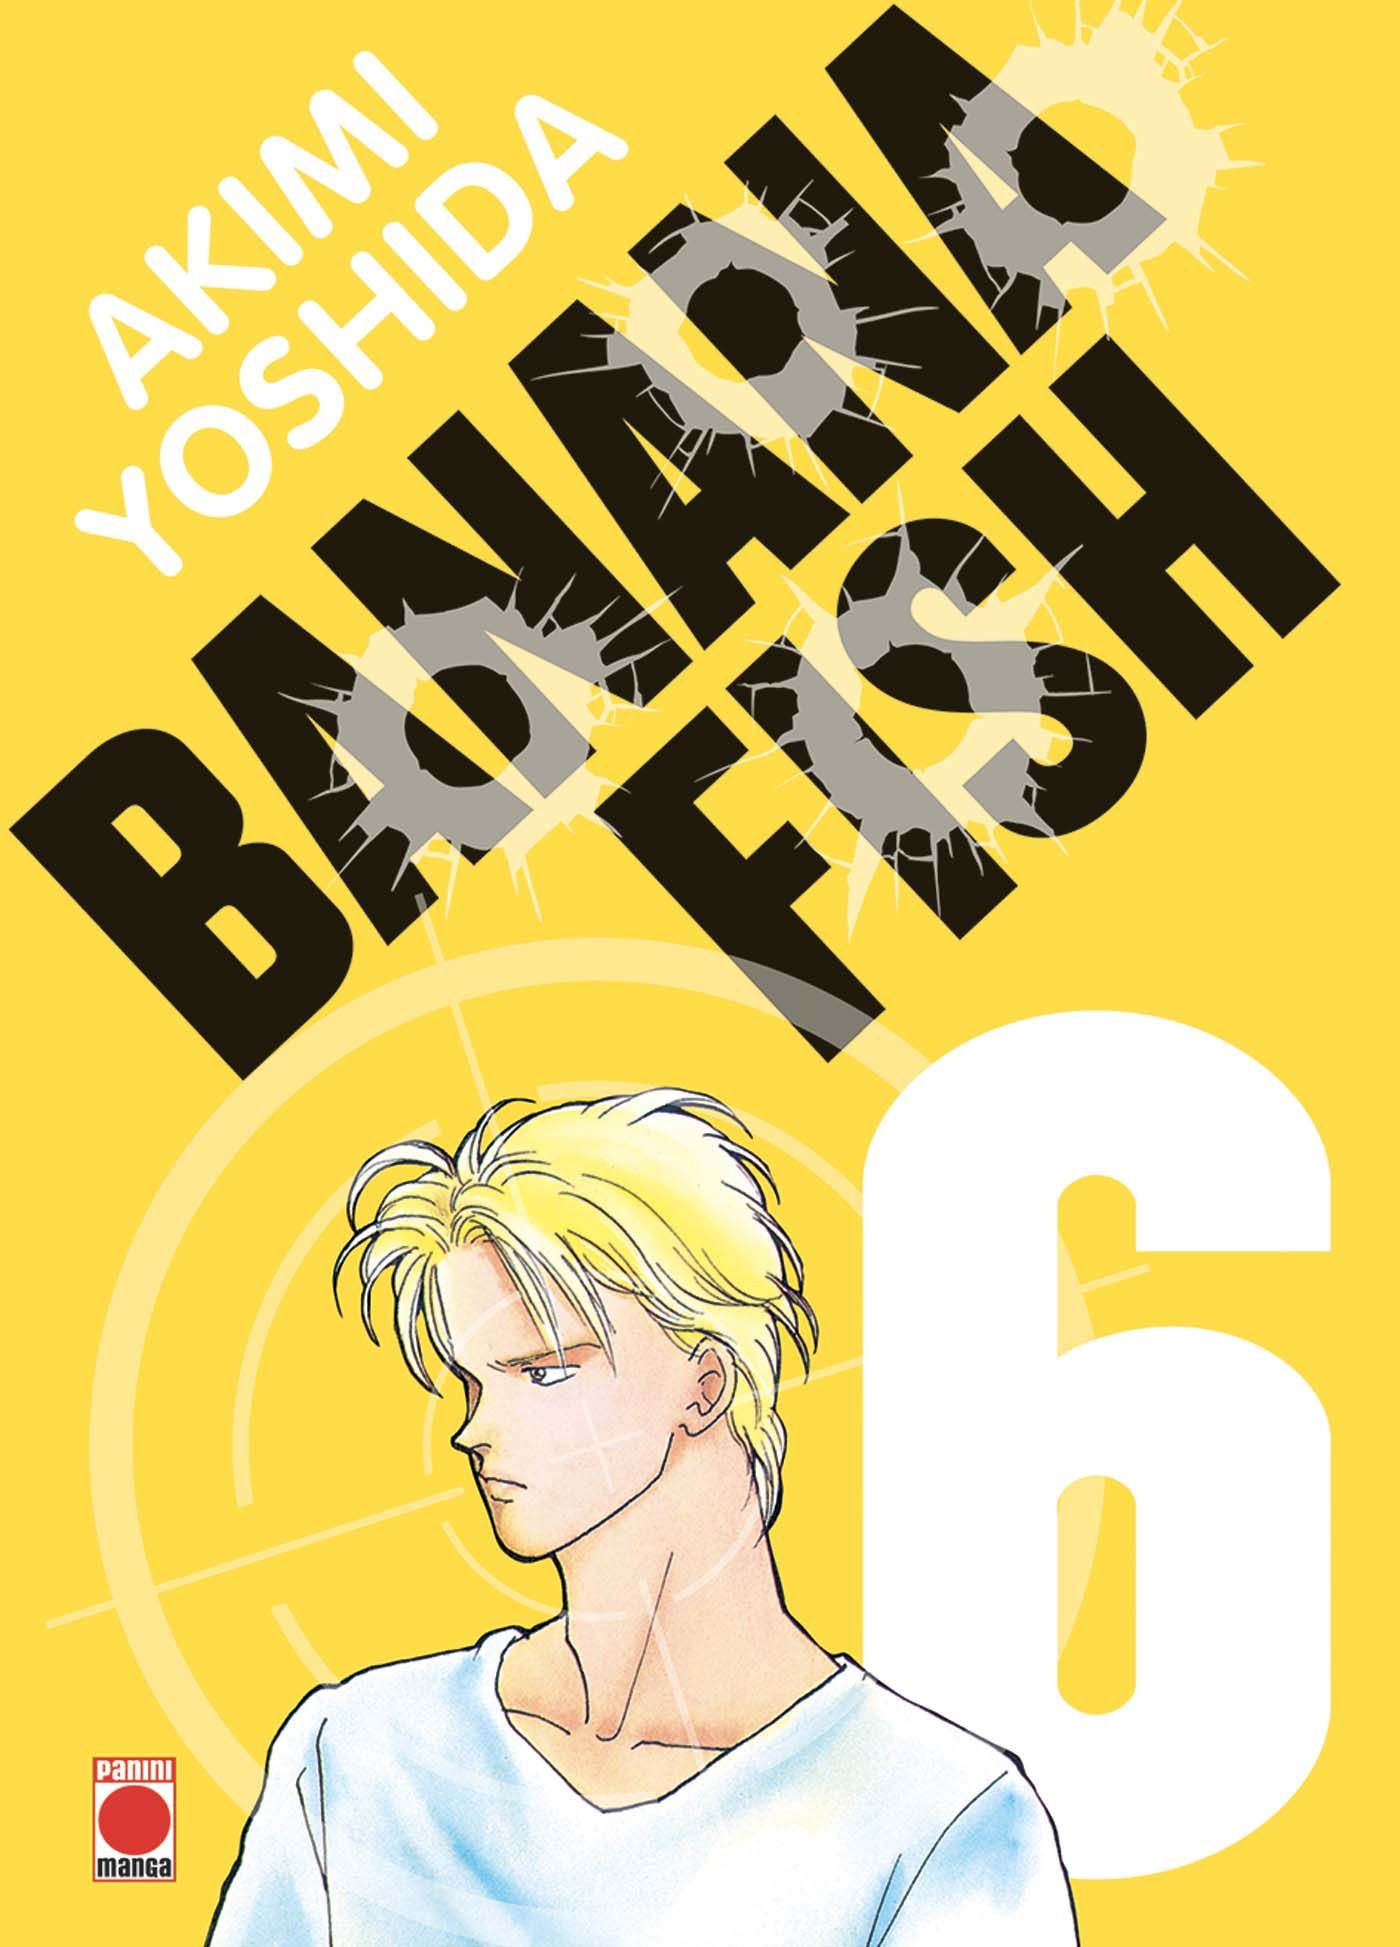 Banana Fish Manga Volume 6